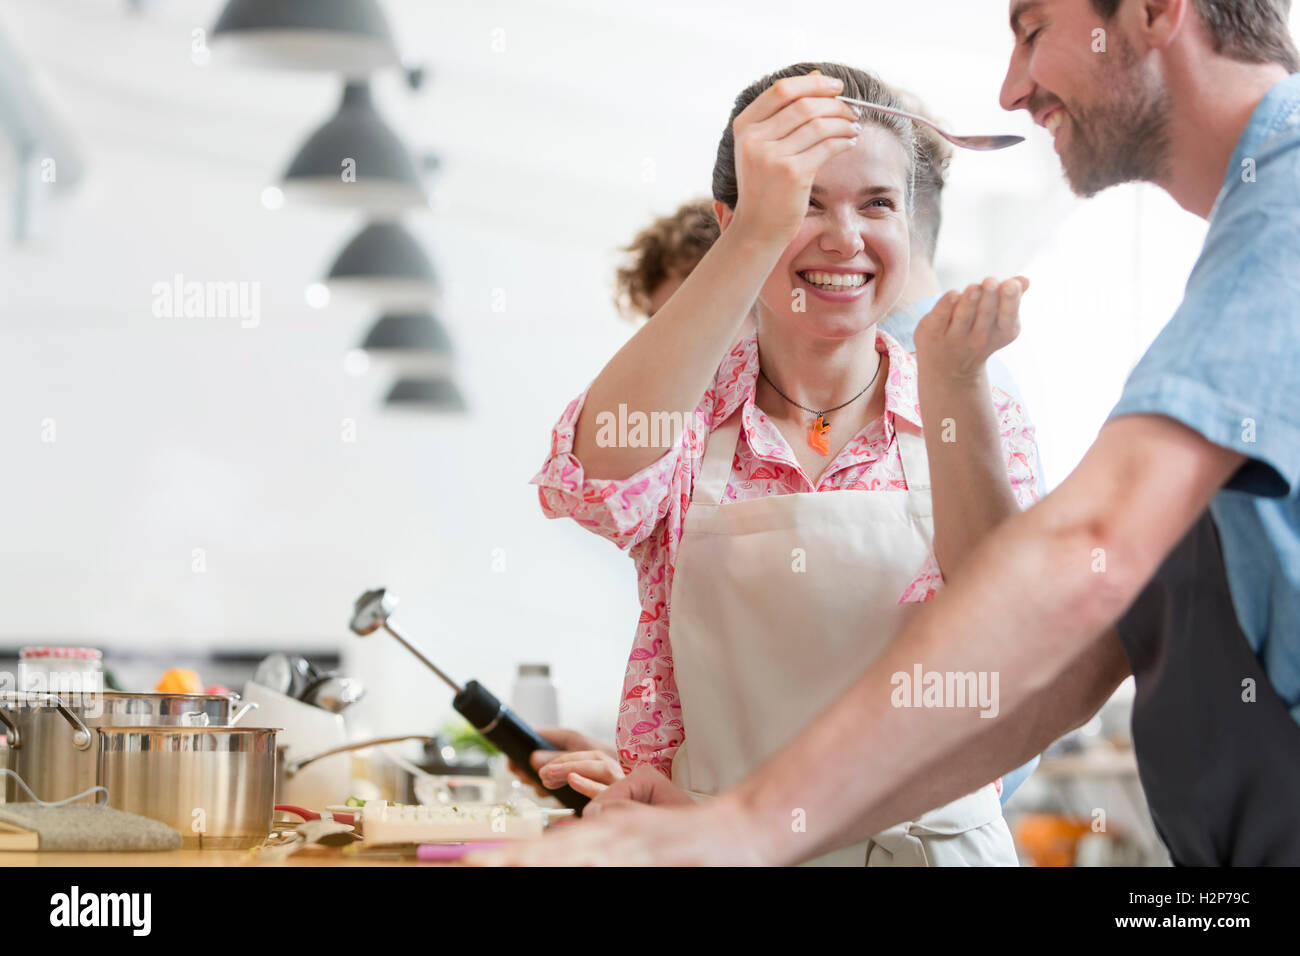 Lächelnde paar schmeckendes Essen in der Küche Klasse Küche Stockfoto